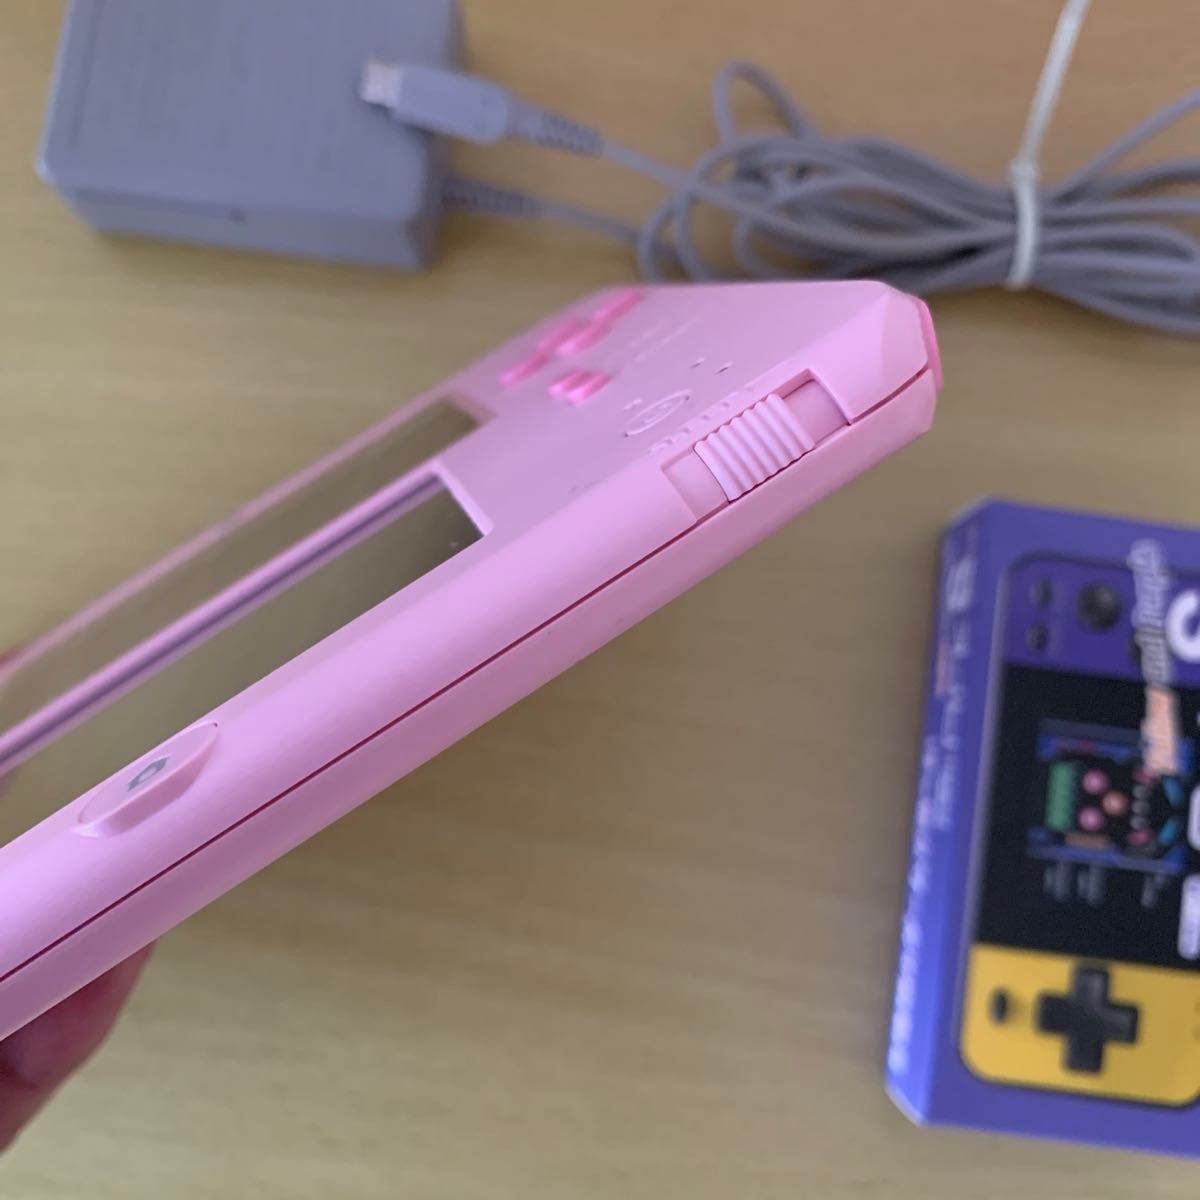 ニンテンドー2DS(ピンク)超美品とおまけのソフト(ポケモンサン)とミニ携帯ゲーム